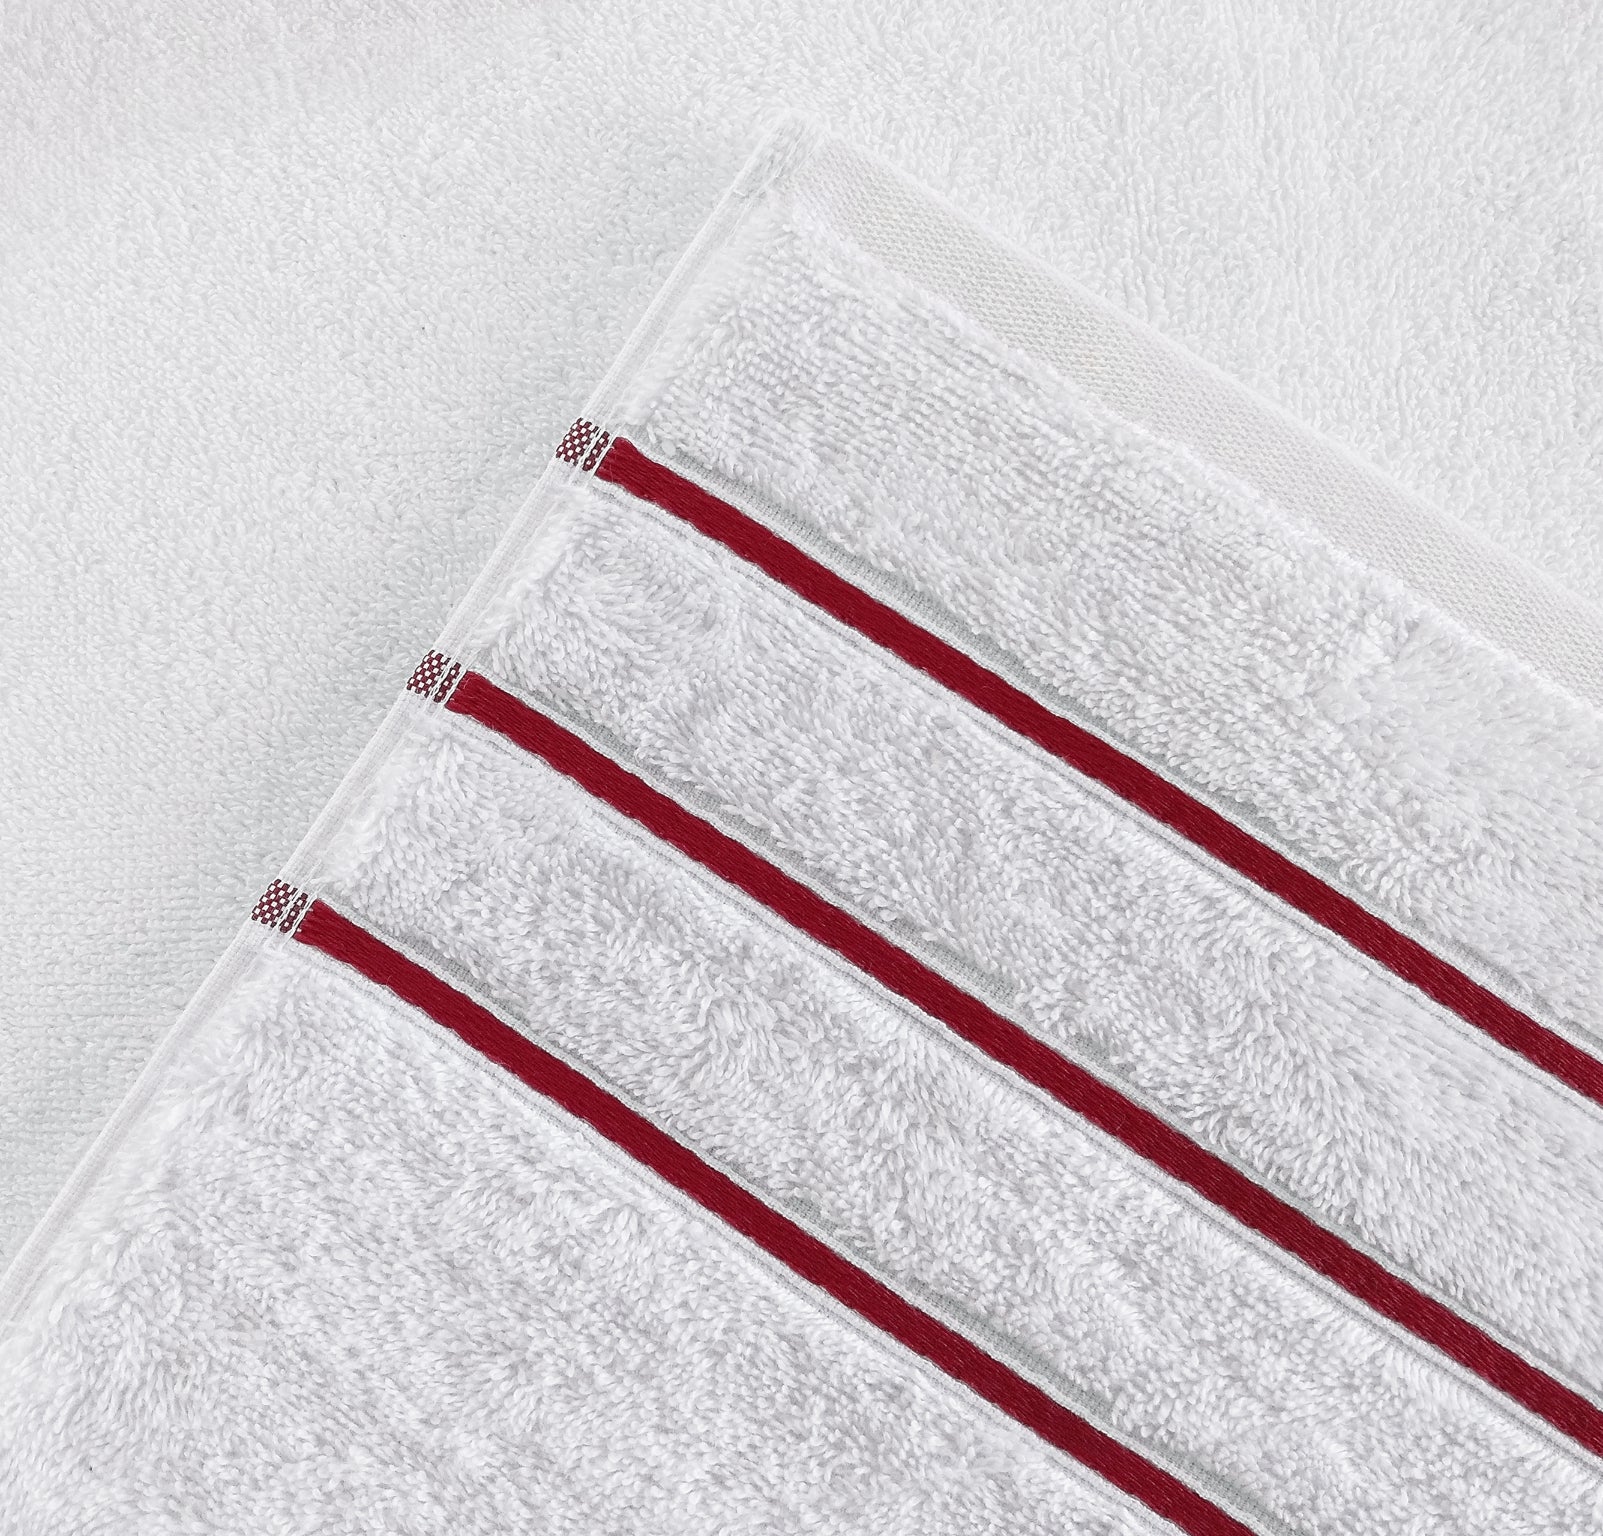 American Soft Linen - Salem 6 Piece Turkish Cotton Luxury Towel Set - Bordeaux-Red - 6